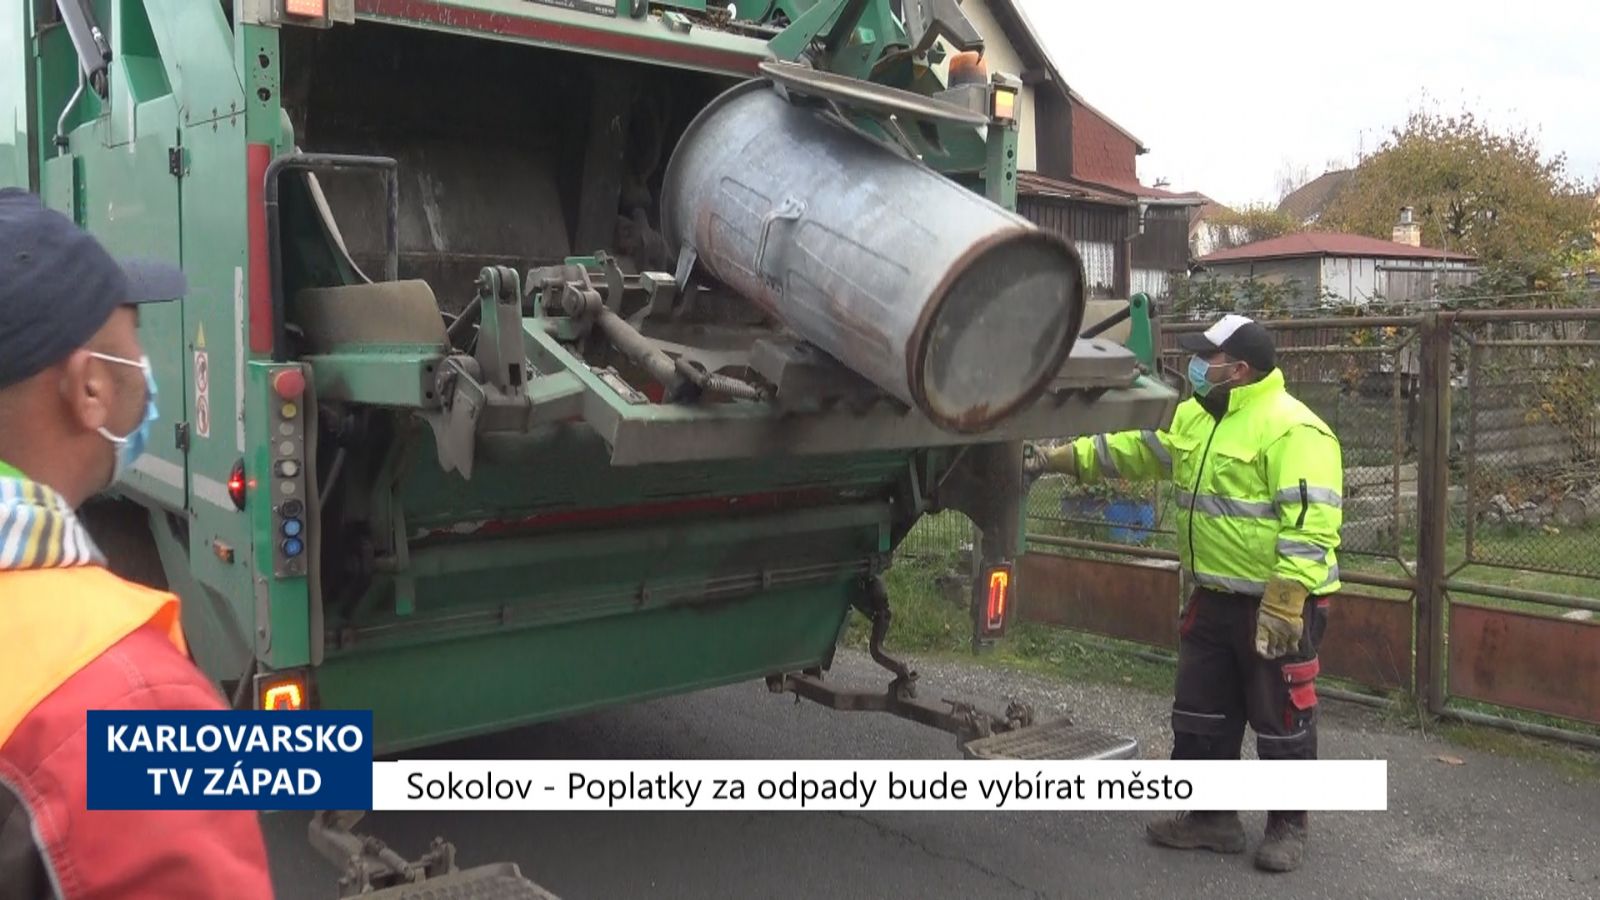 Sokolov: Poplatky za odpady bude vybírat město (TV Západ)